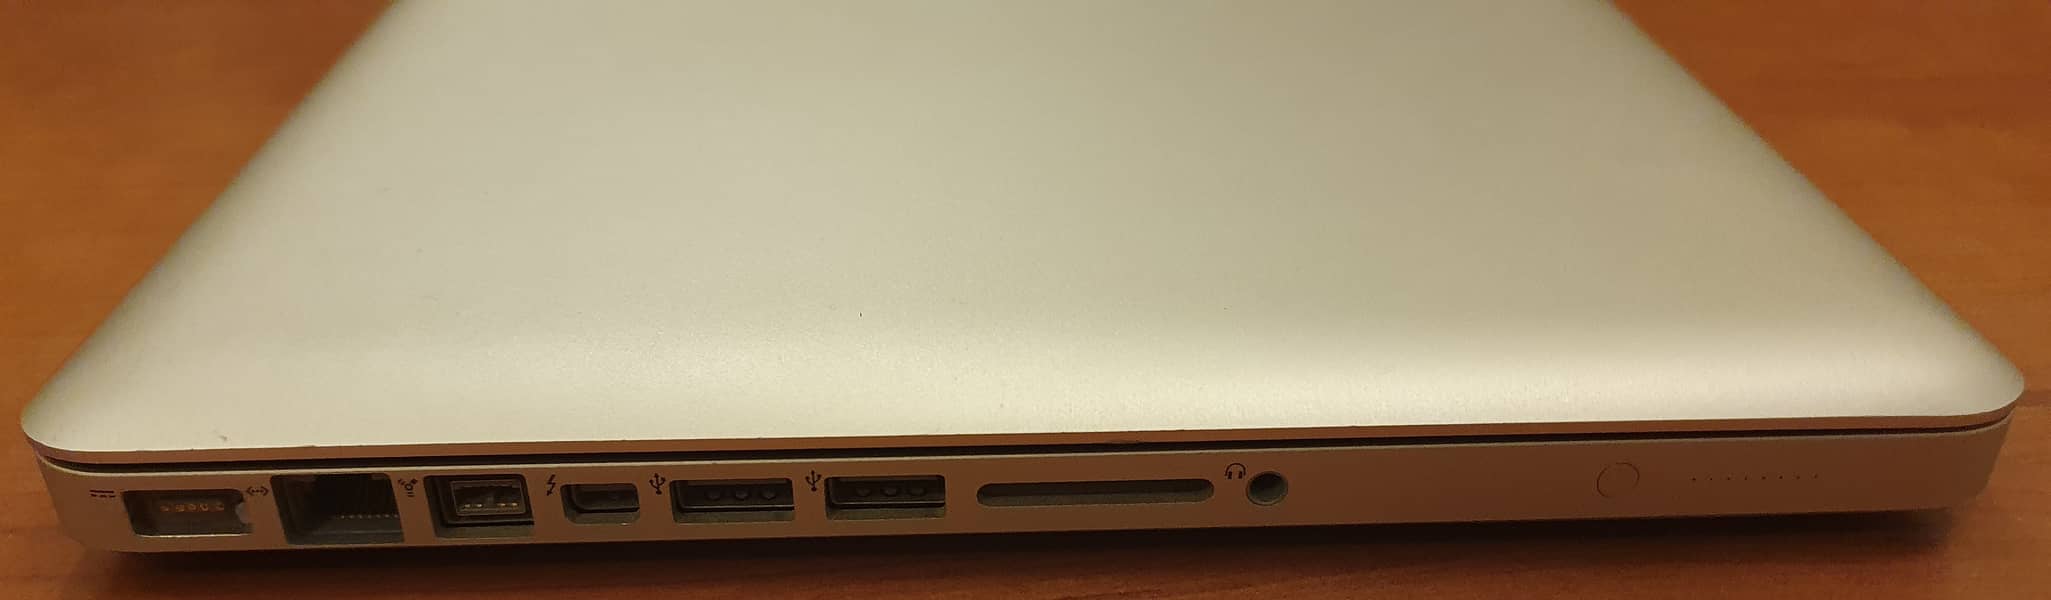 MacBook Pro 13-inch Mid 2012 Core i7 2.9GHz - 8GB DDR3 RAM - 640GB HD 3